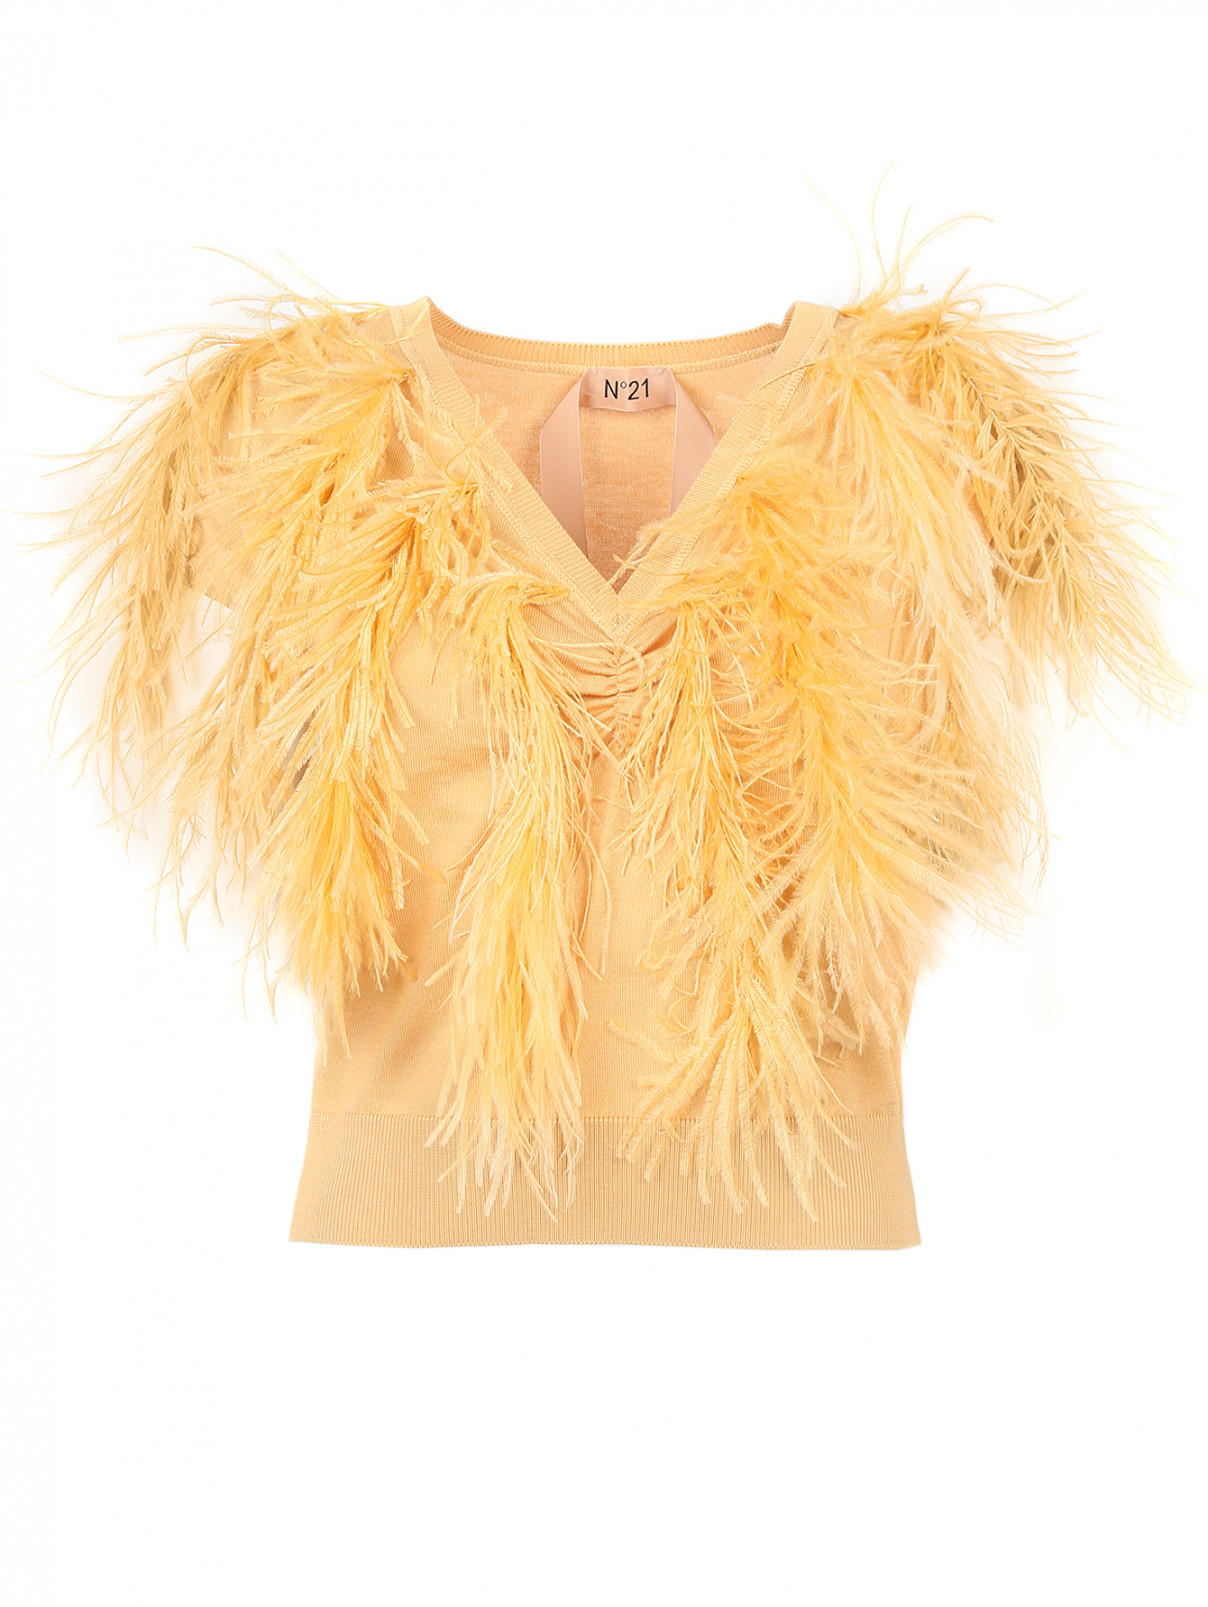 Джемпер из хлопка и шелка декорированный перьями страуса N21  –  Общий вид  – Цвет:  Желтый